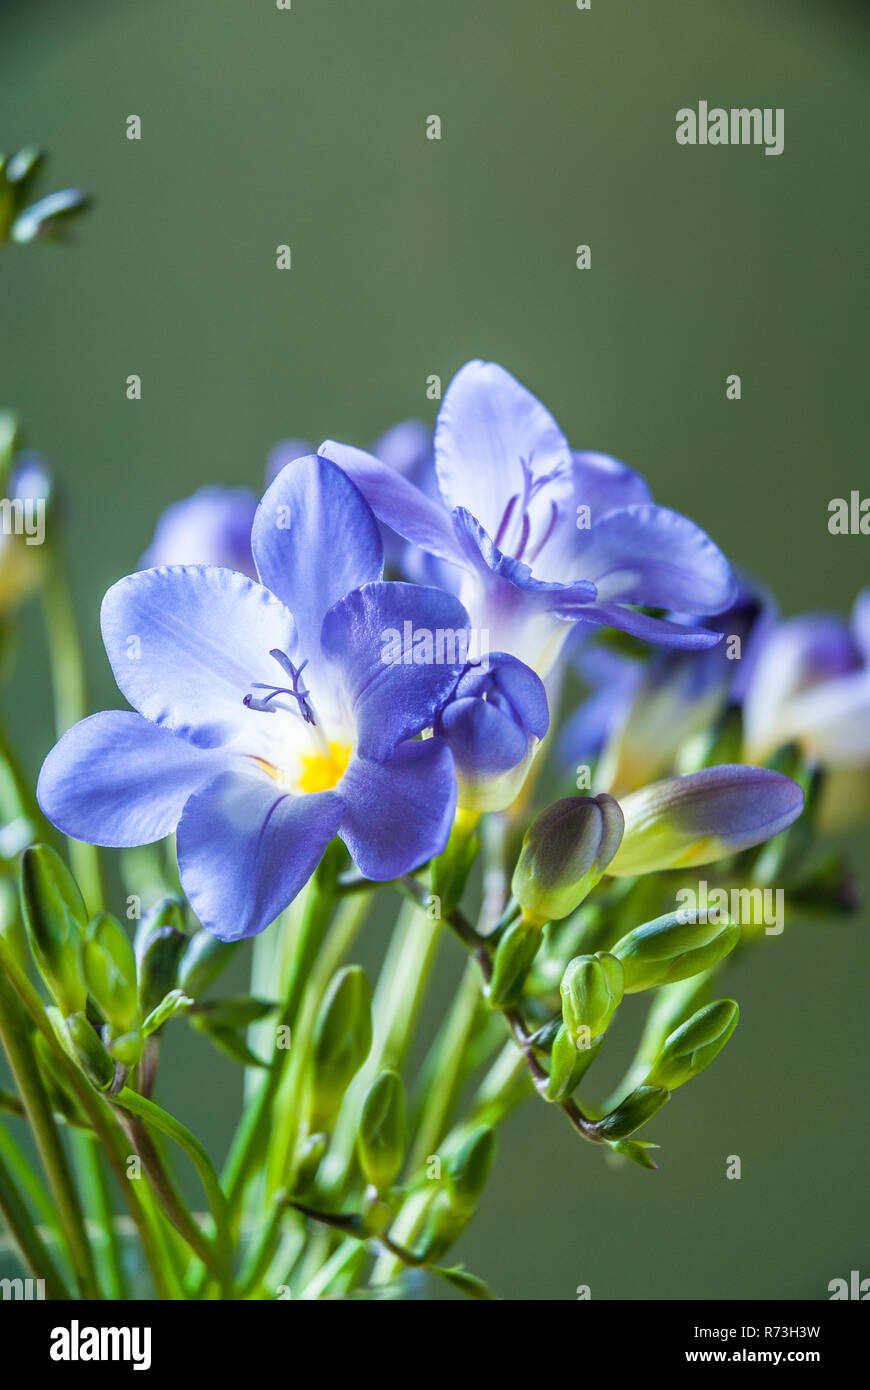 Freesia azul flores aisladas contra un fondo verde Fotografía de stock -  Alamy